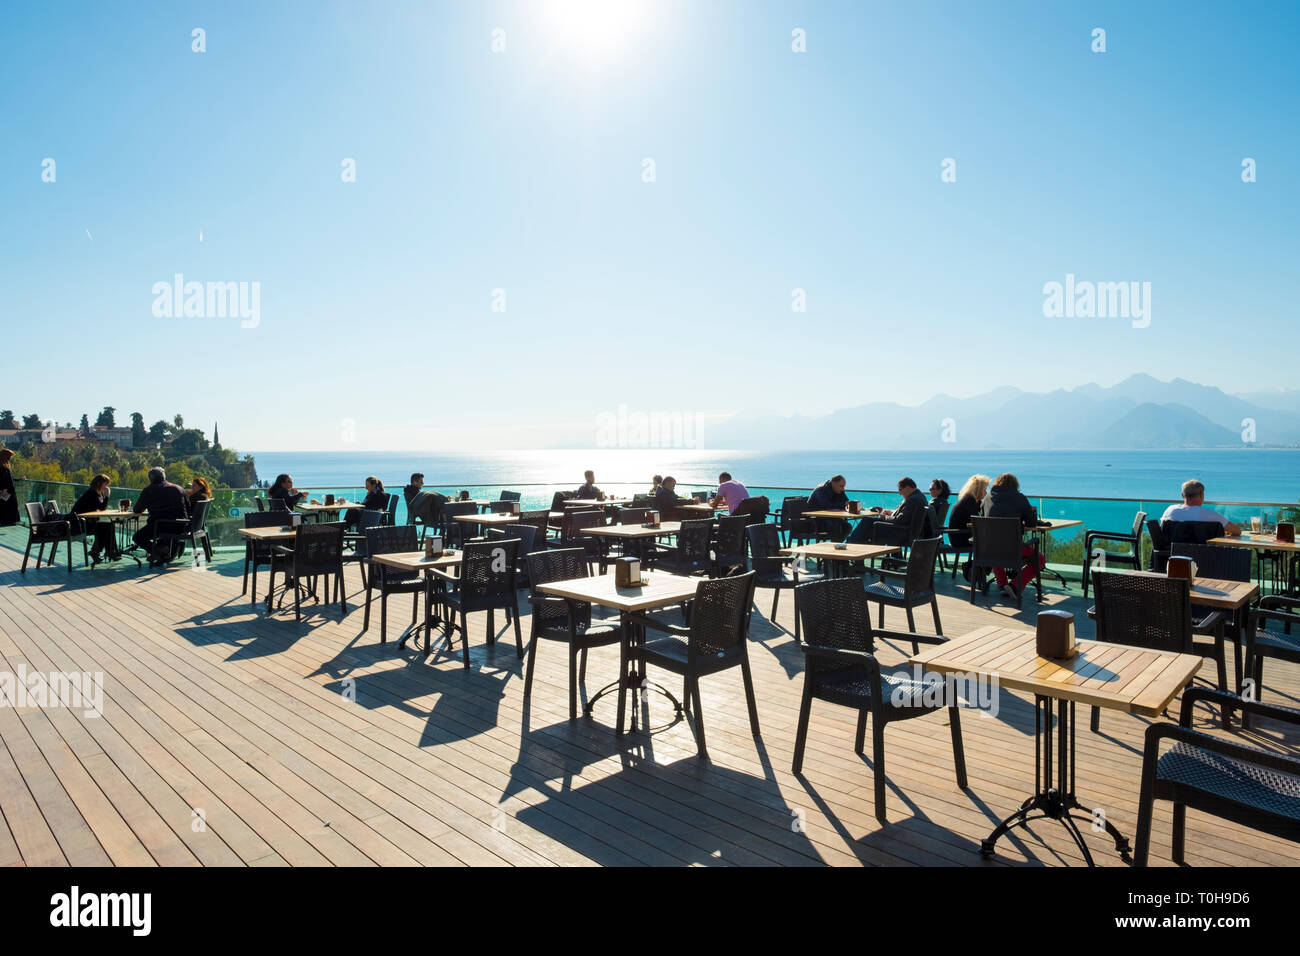 Antalya, Turquie - Novembeer 24, 2017 : Tables et chaises mis en place à une plate-forme d'observation surplombant les montagnes vue sur la mer Méditerranée Banque D'Images